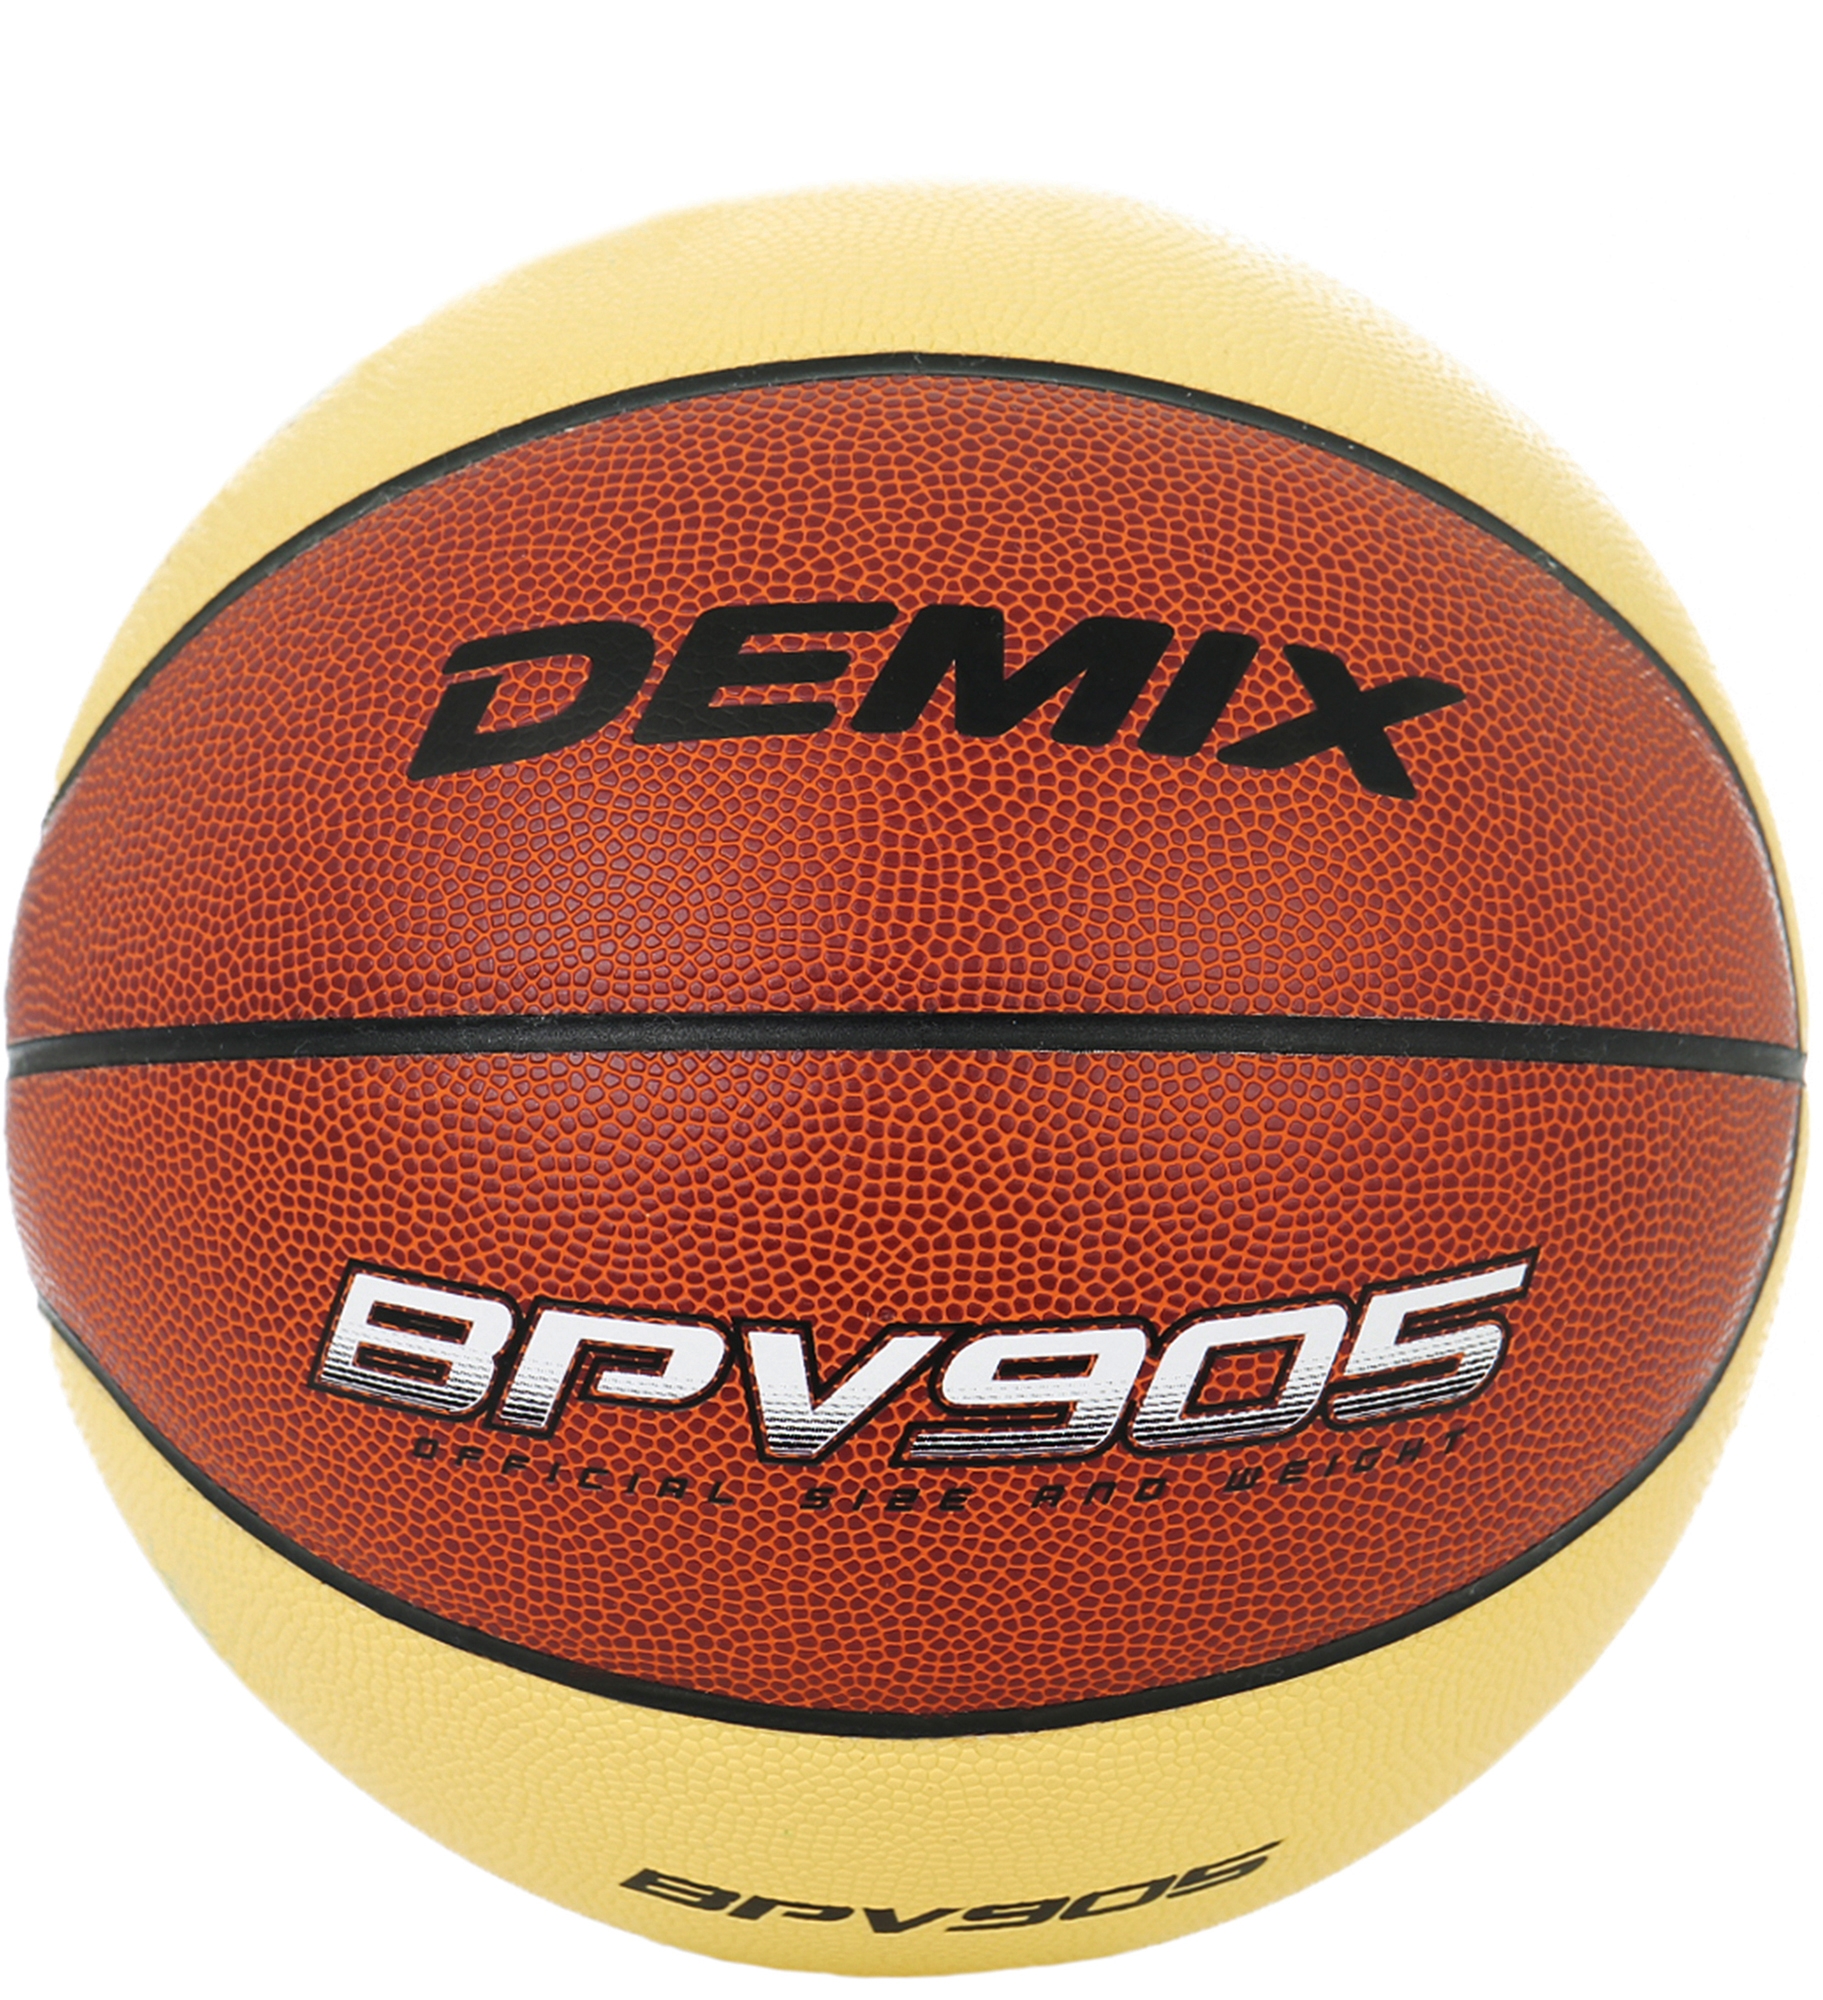 Мяч баскетбольный Demix